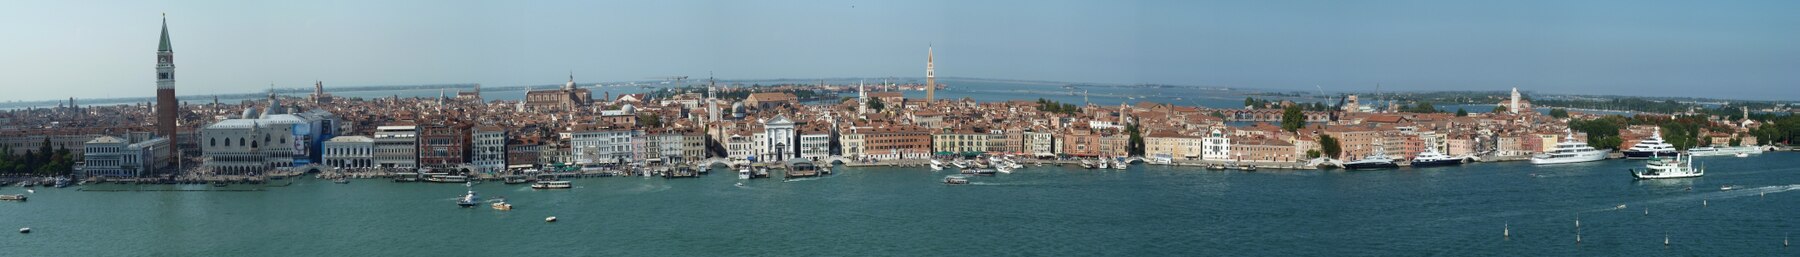 Landskap av Venedig